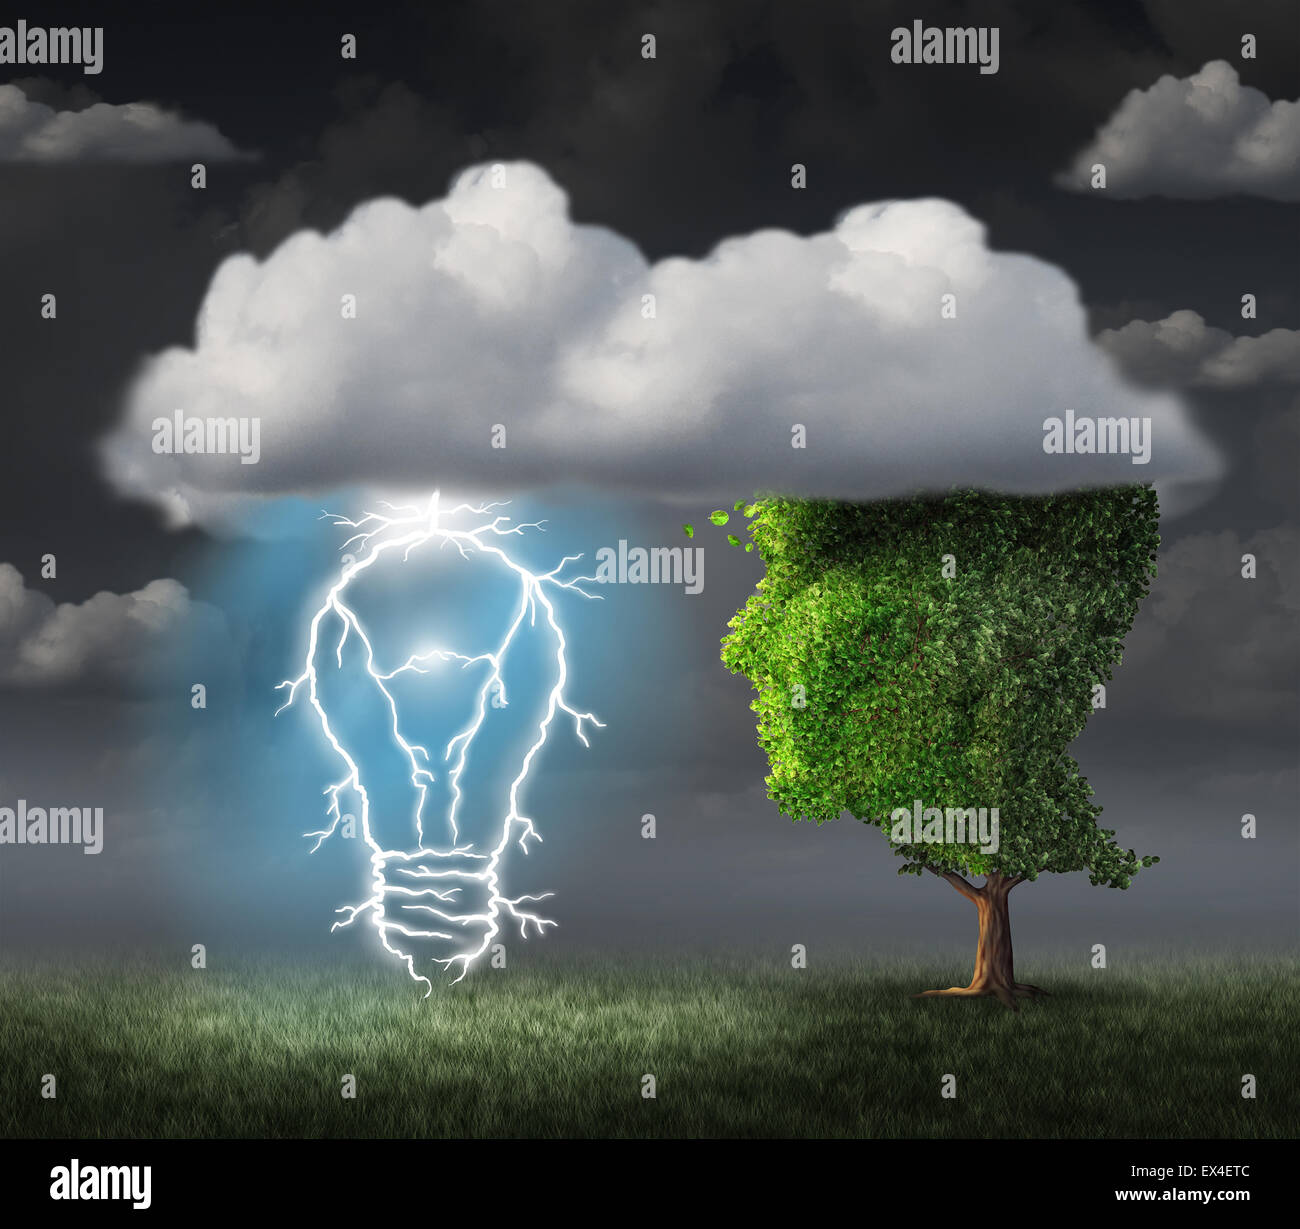 Idée d'entreprise concept comme un arbre en forme de visage sous un nuage avec un éclair électrique en forme d'ampoule allumée comme une métaphore pour l'inspiration créative et de succès. Banque D'Images